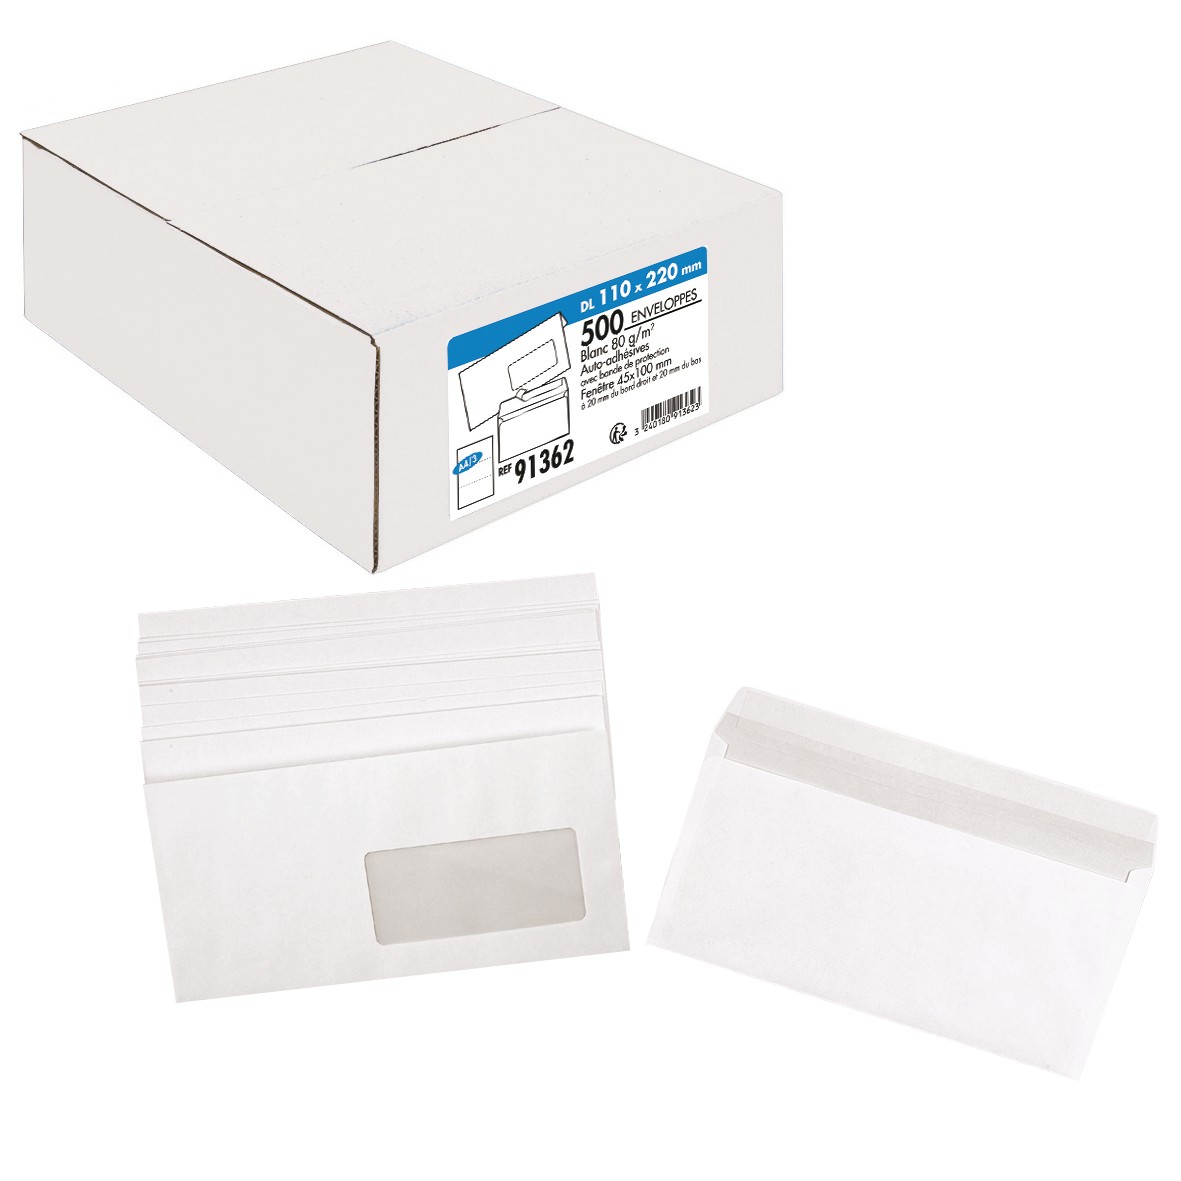 La Couronne - 500 Enveloppes DL 110 x 220 mm - 80 gr - fenêtre 45x100 mm - blanc - bande auto-adhésive